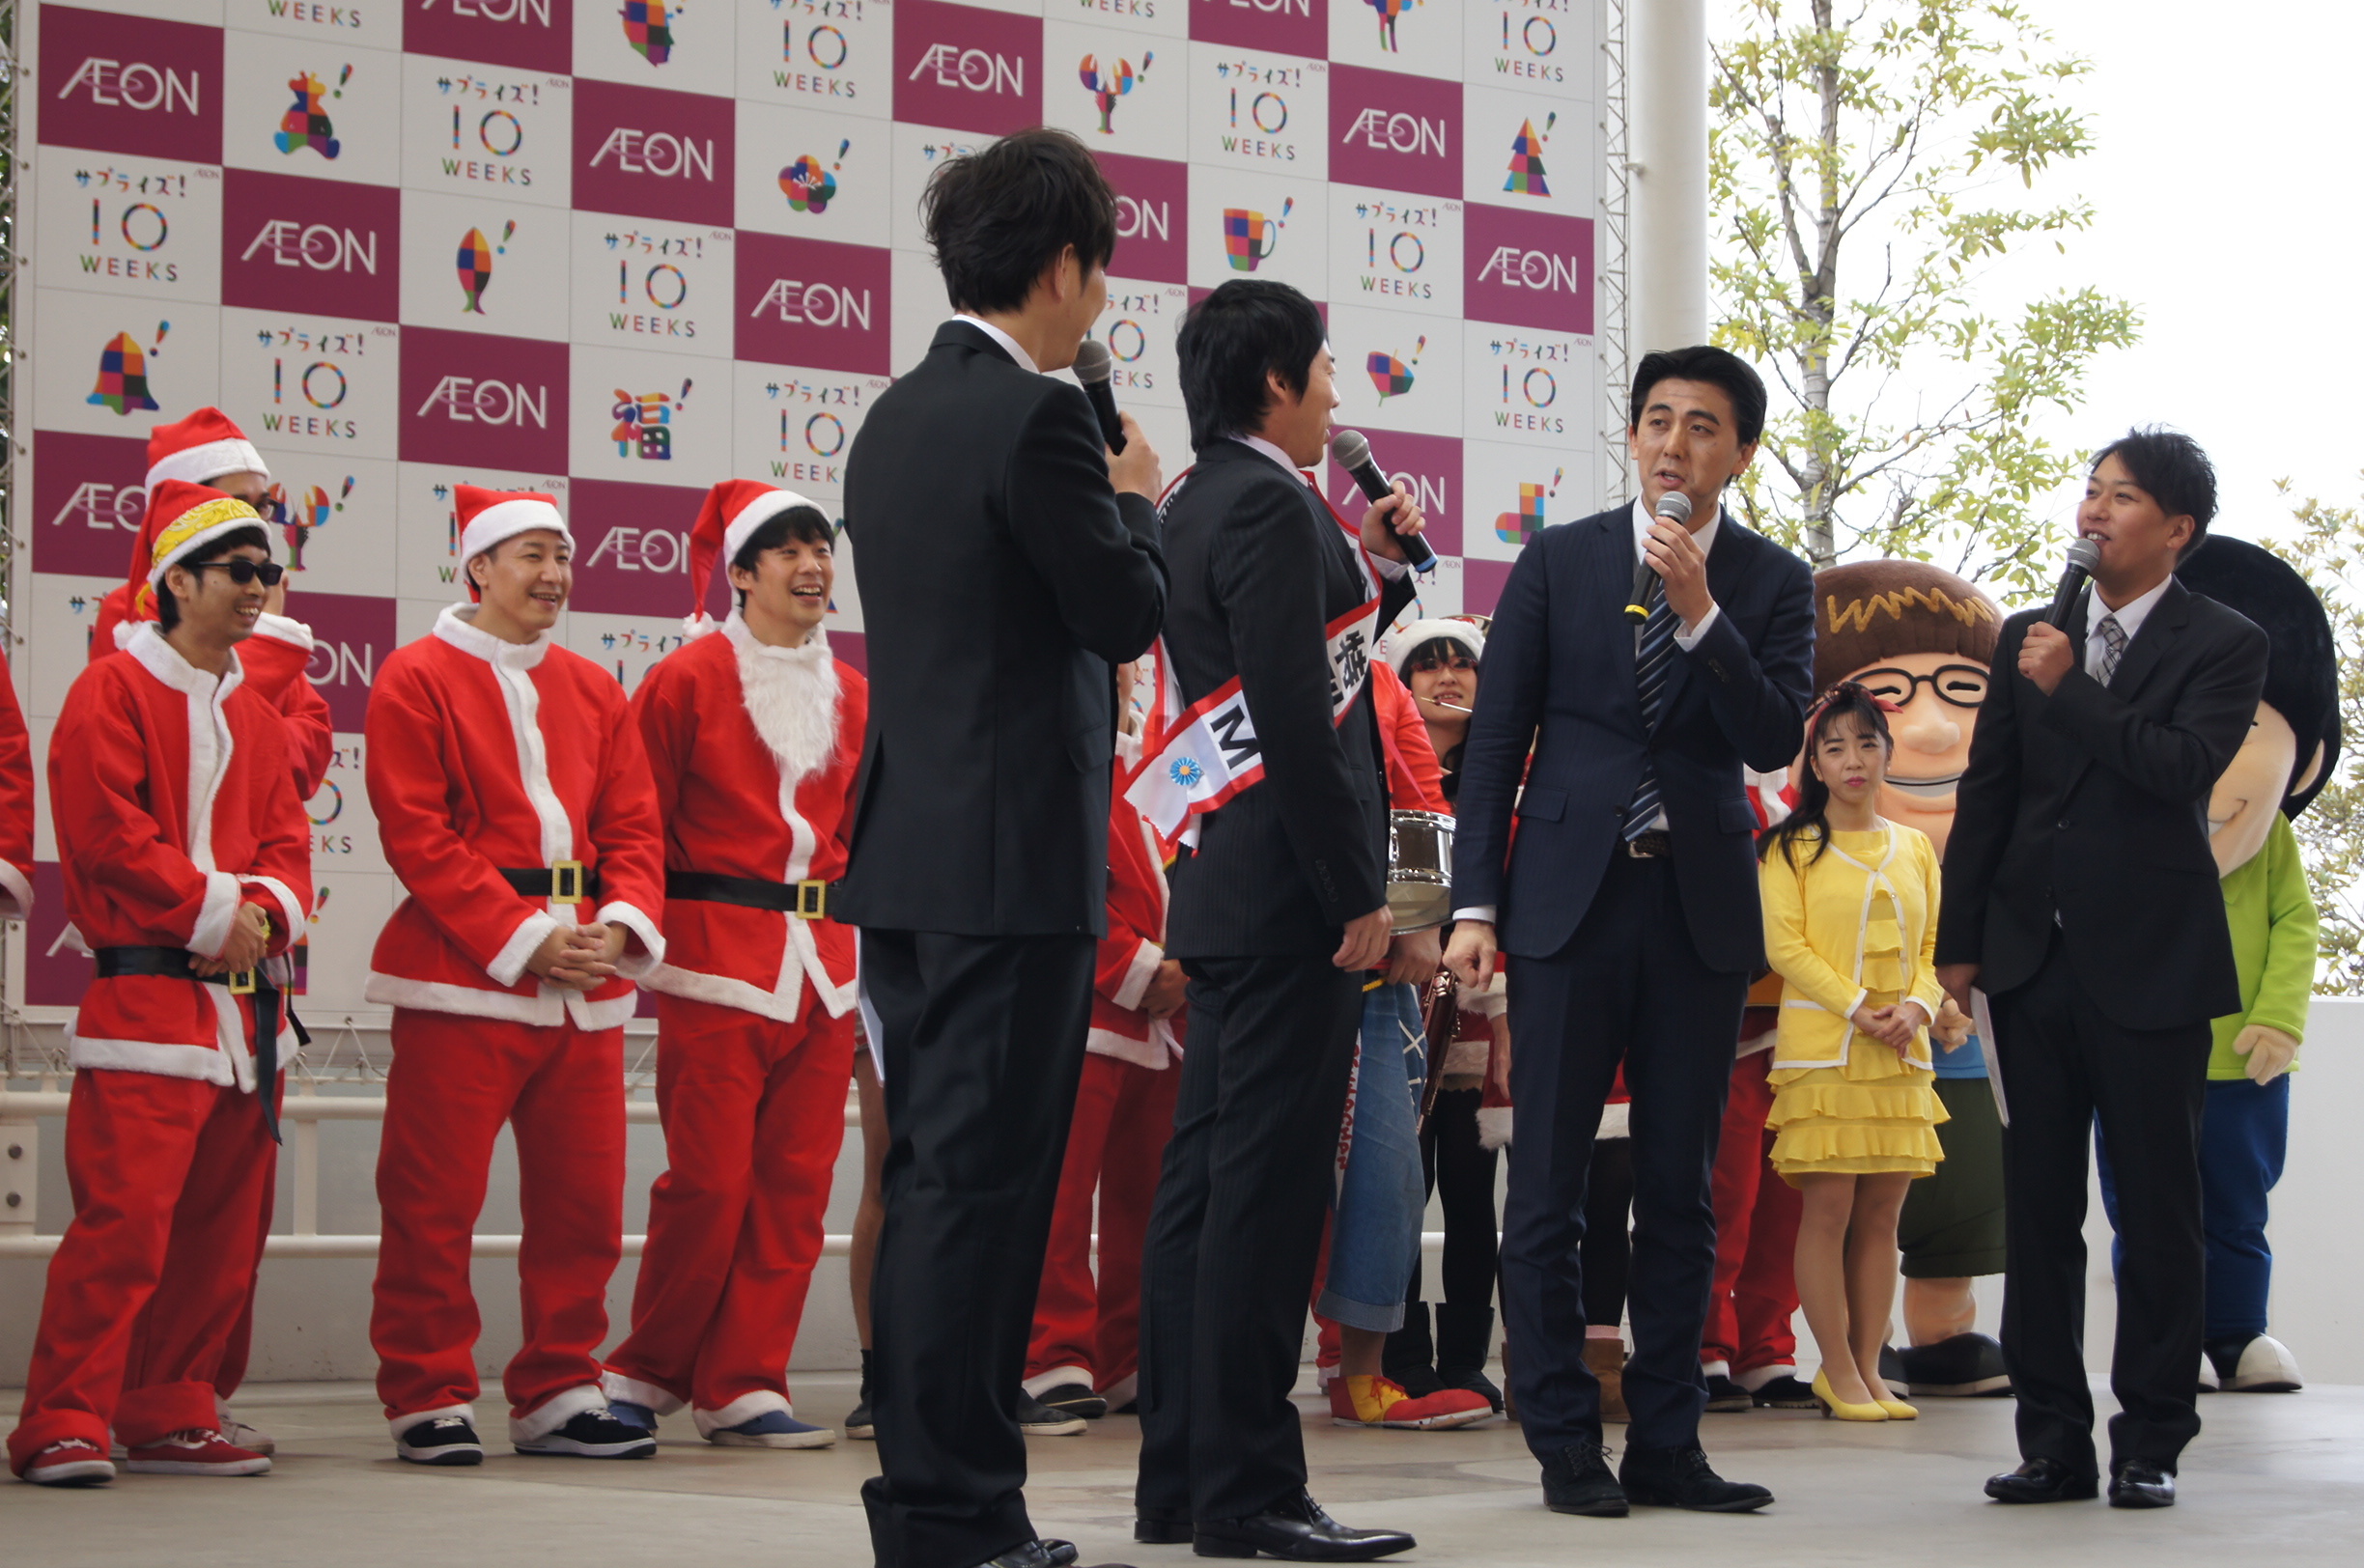 http://news.yoshimoto.co.jp/photos/uncategorized/2014/12/20/20141220171312-49a331e271de563d65abbf3eb004871db333bece.jpg